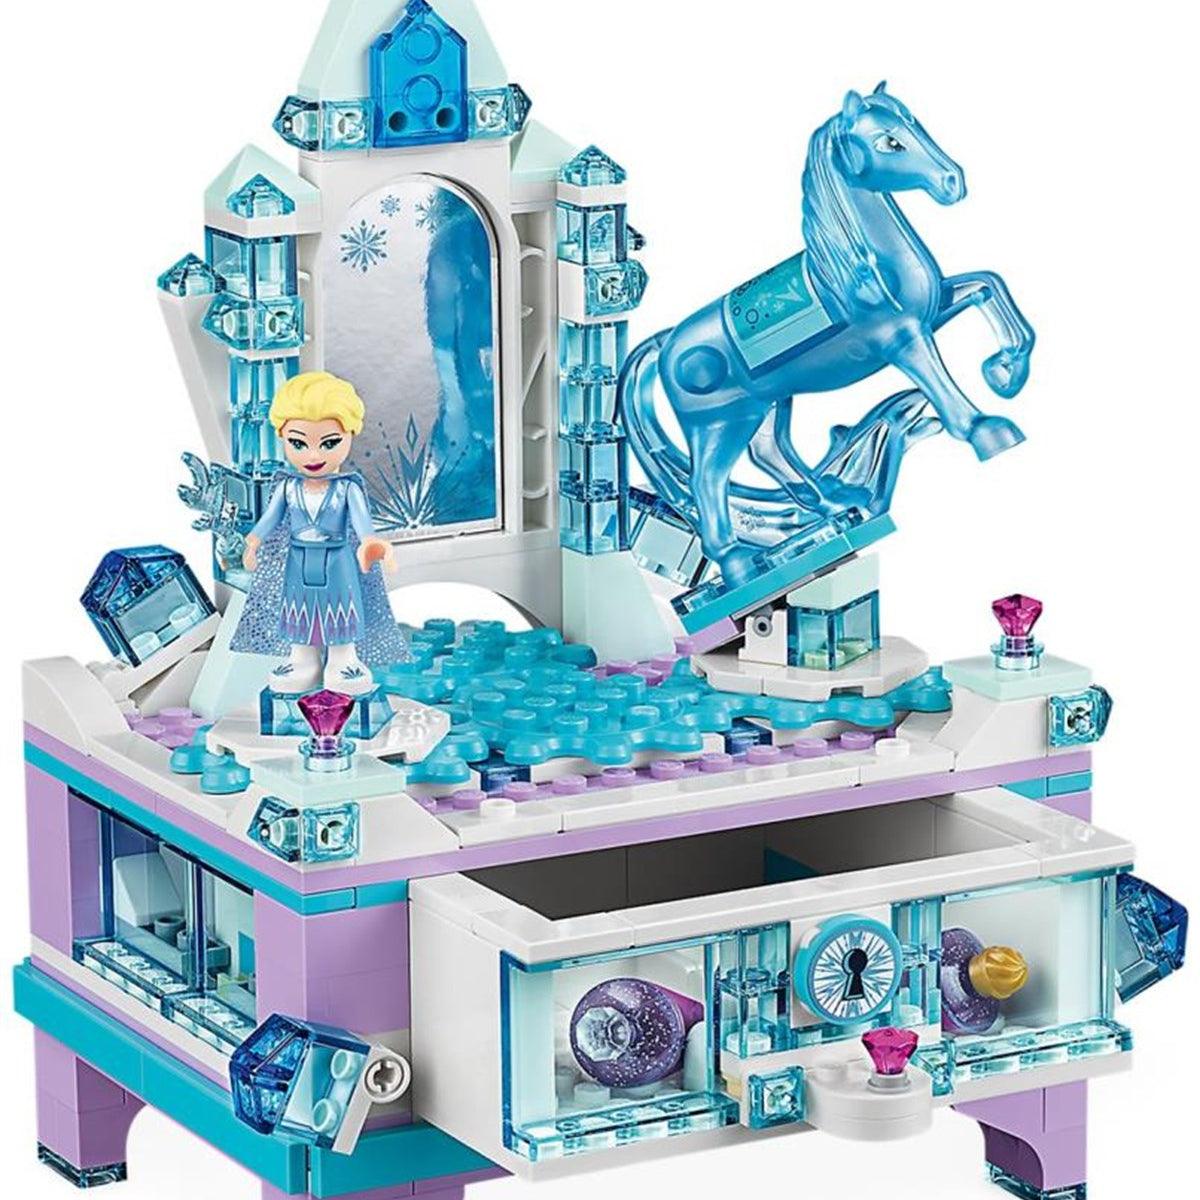 Lego Disney Frozen Elsa'nın Mücevher Kutusu 41168 | Toysall